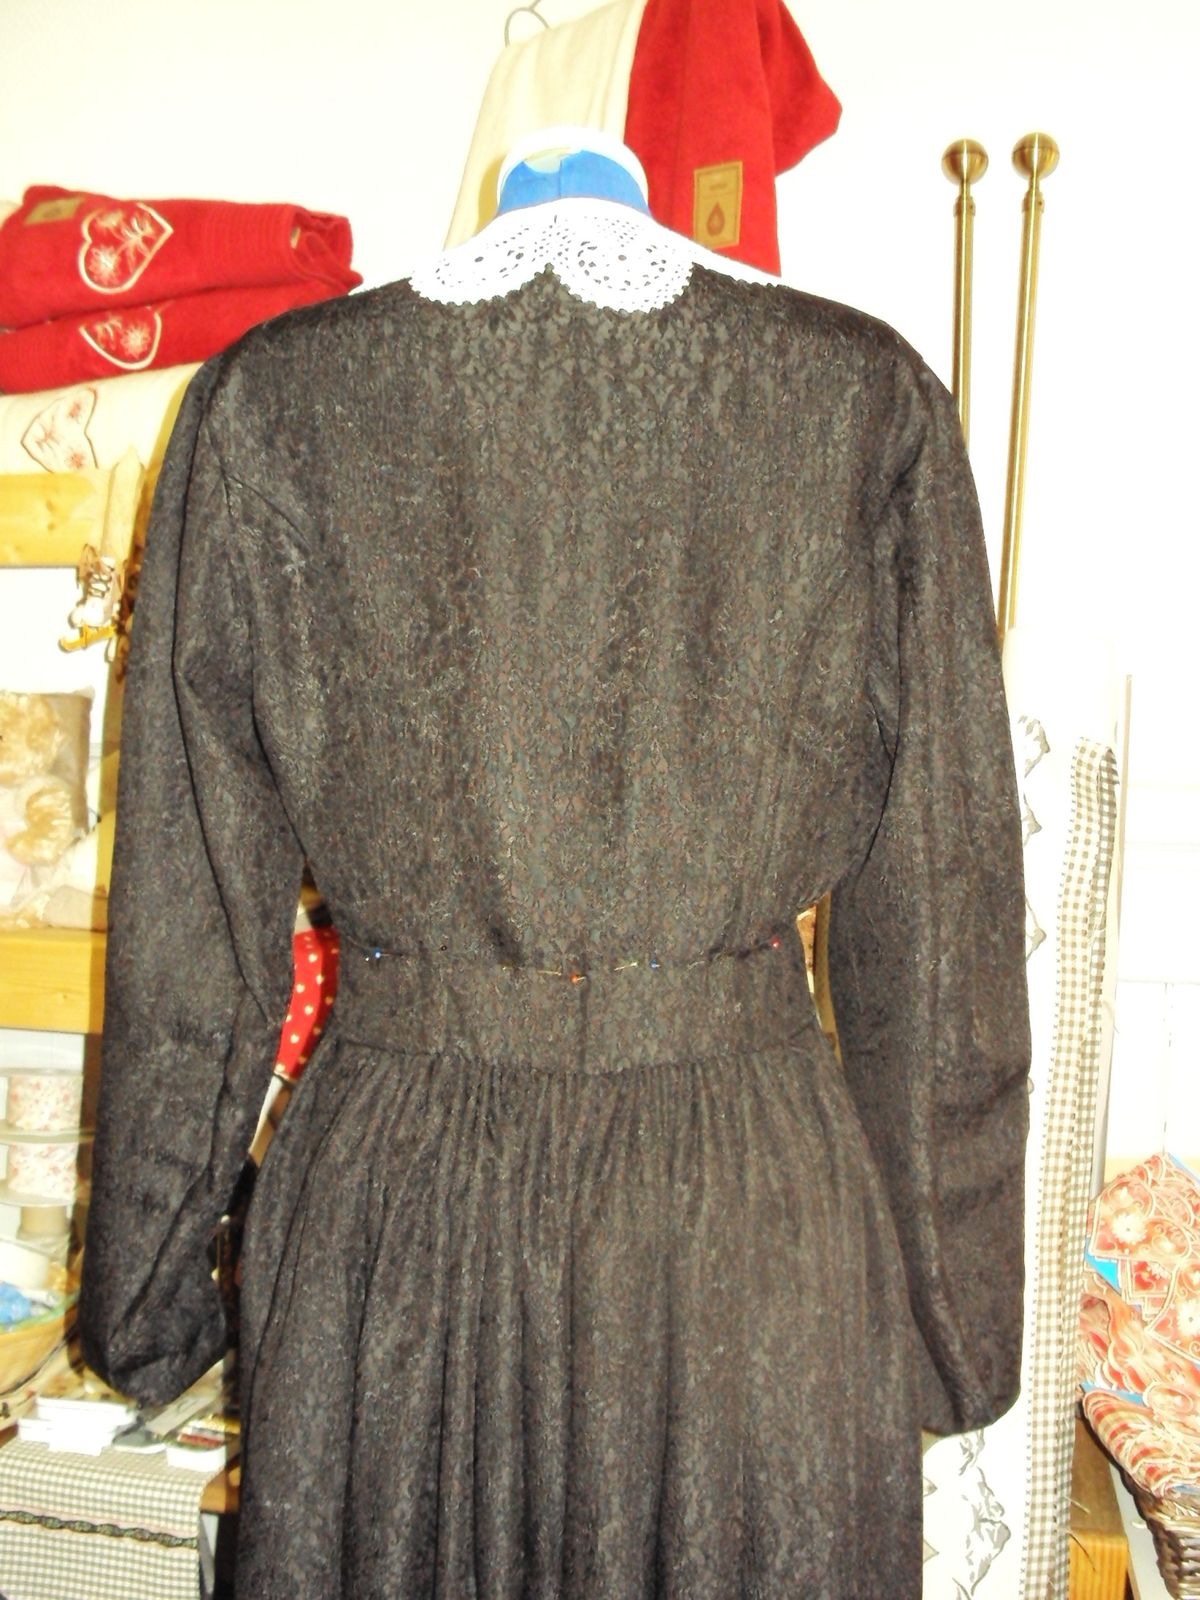 Restauration d'une robe ancienne